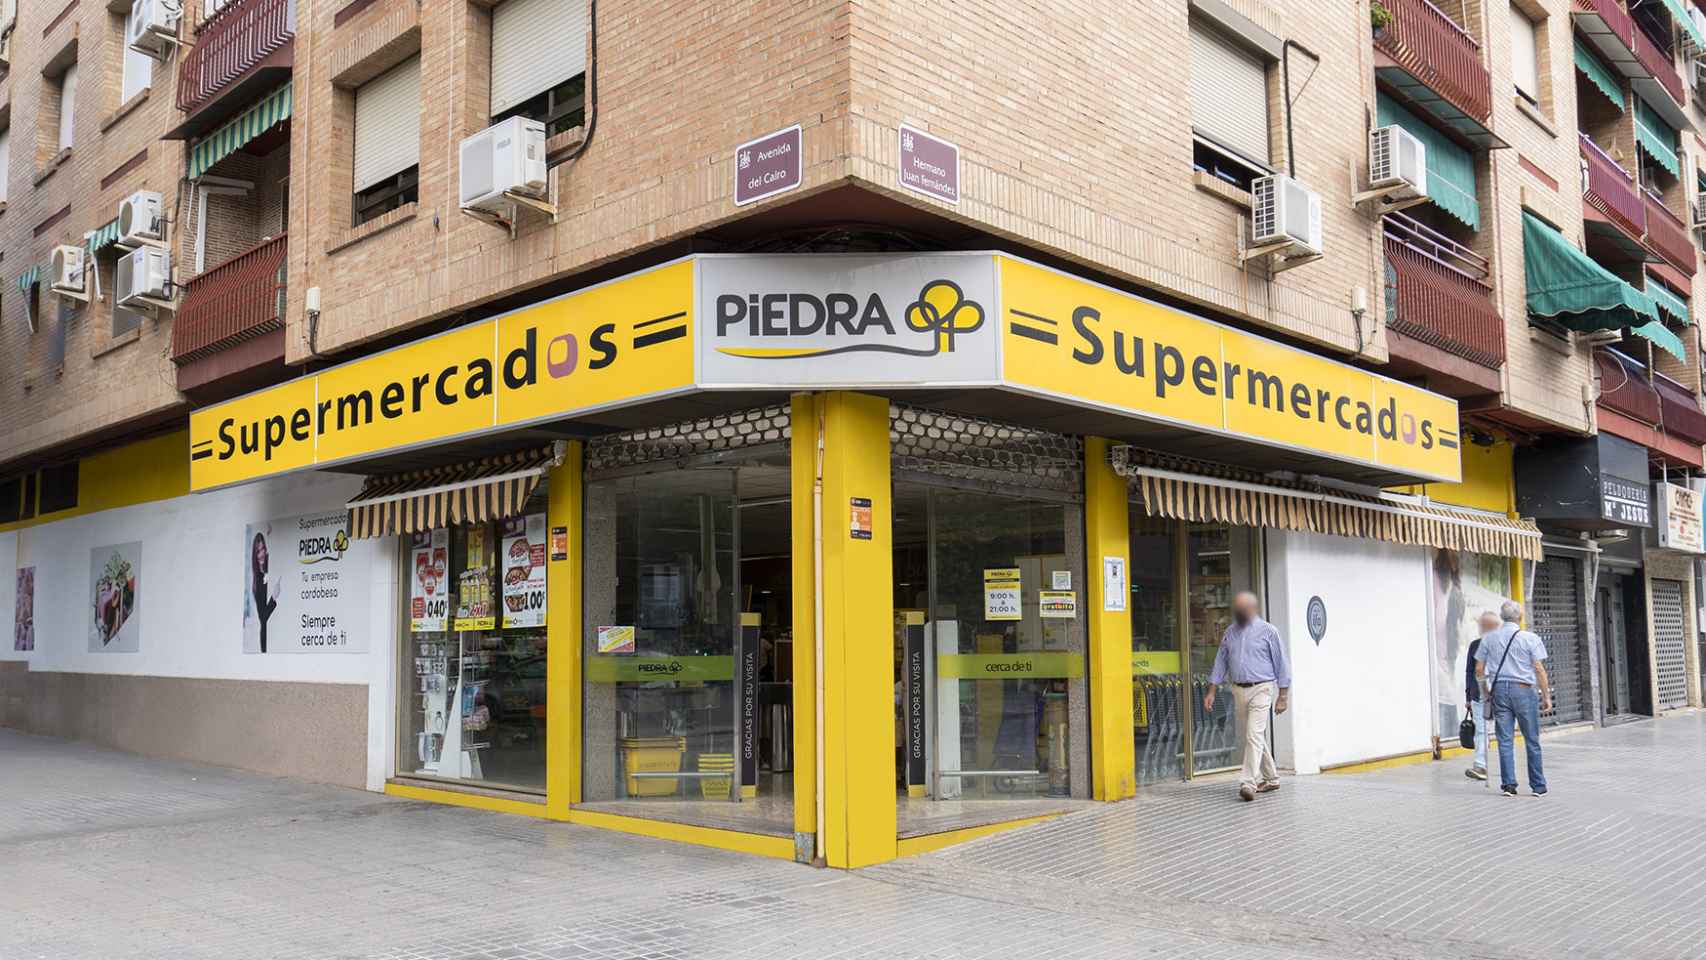 La fachada de uno de los Supermercados Piedra, situado en Córdoba.